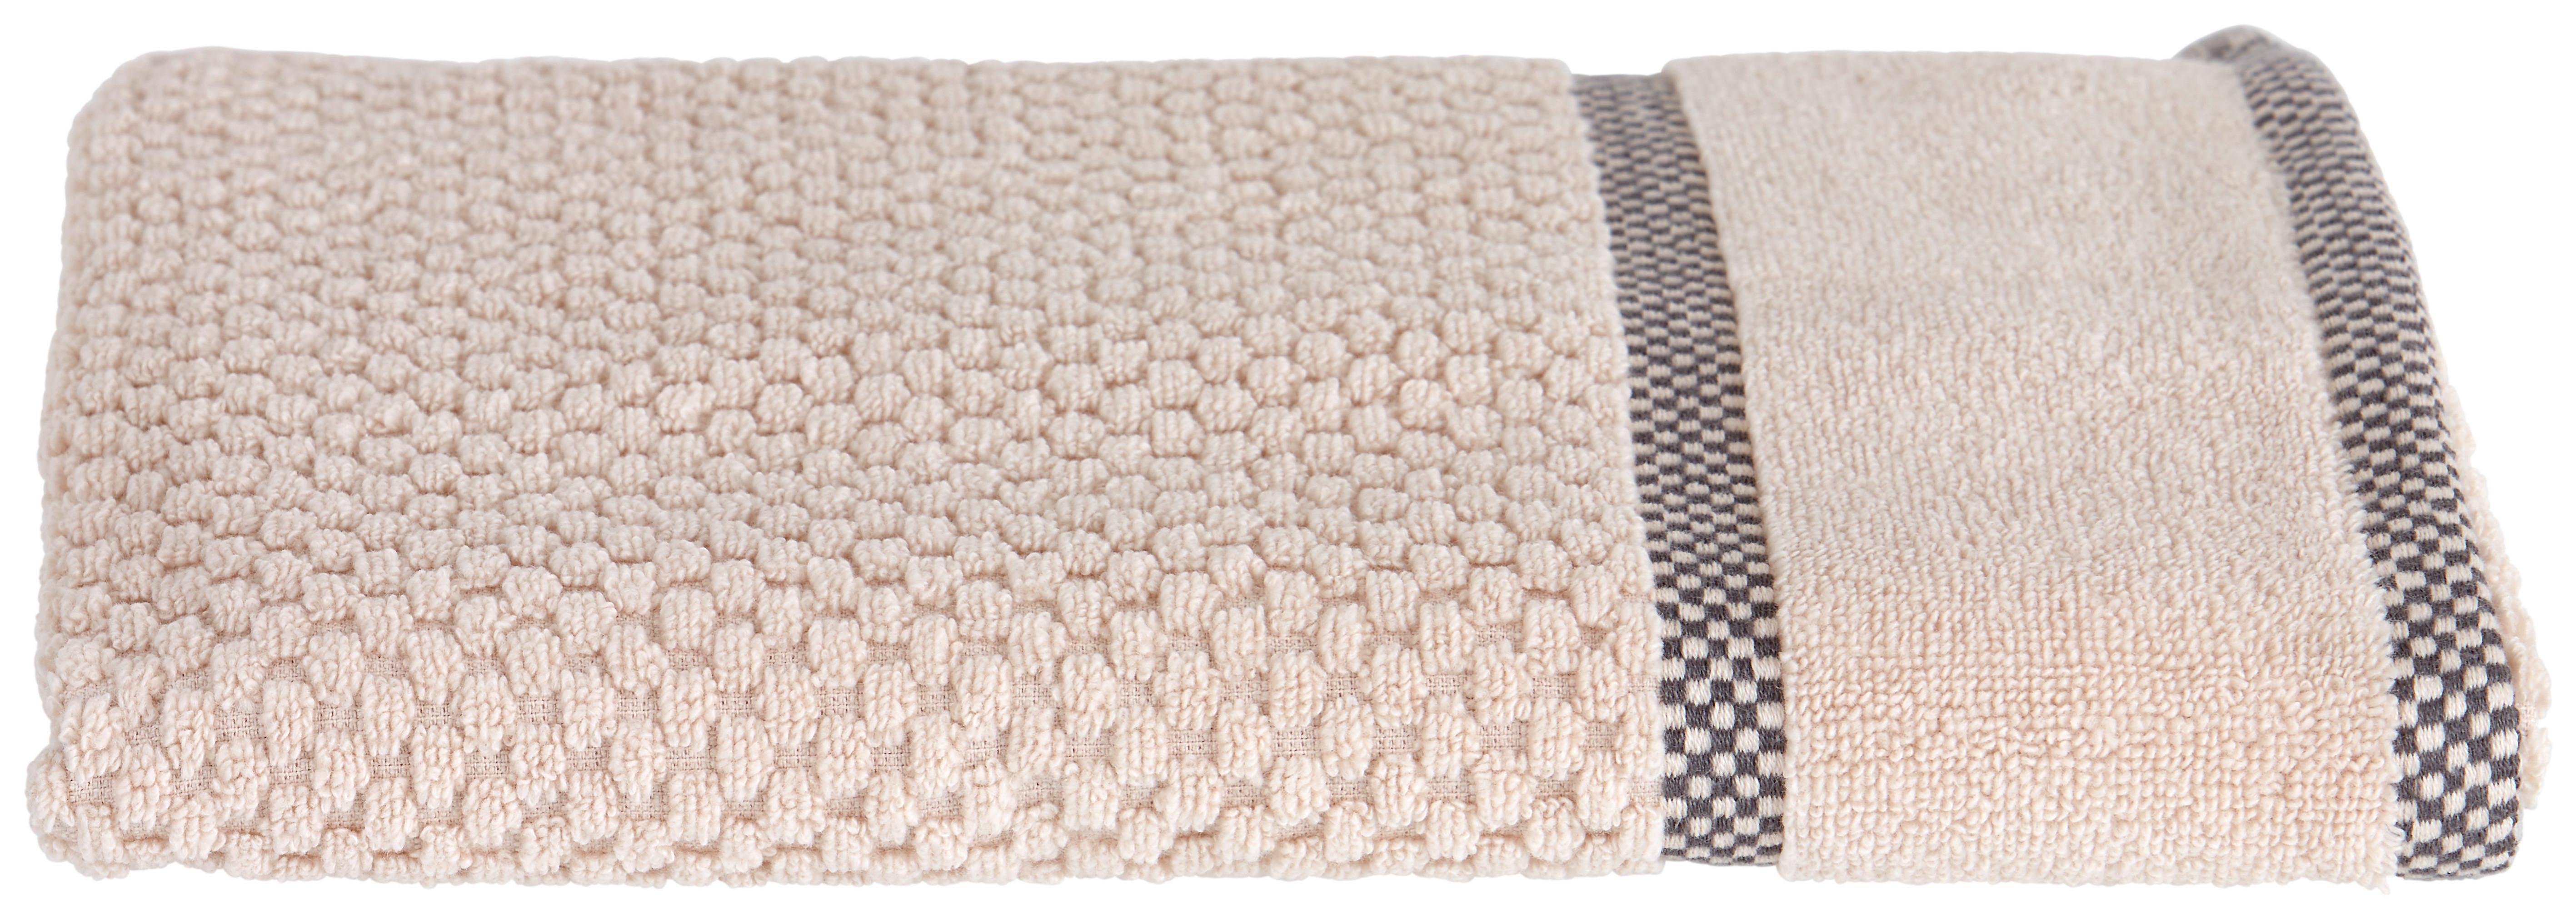 Handtuch Rocky Baumwolle 500 G/M2 Beige 50x100 cm - Beige, ROMANTIK / LANDHAUS, Textil (50/100cm) - James Wood